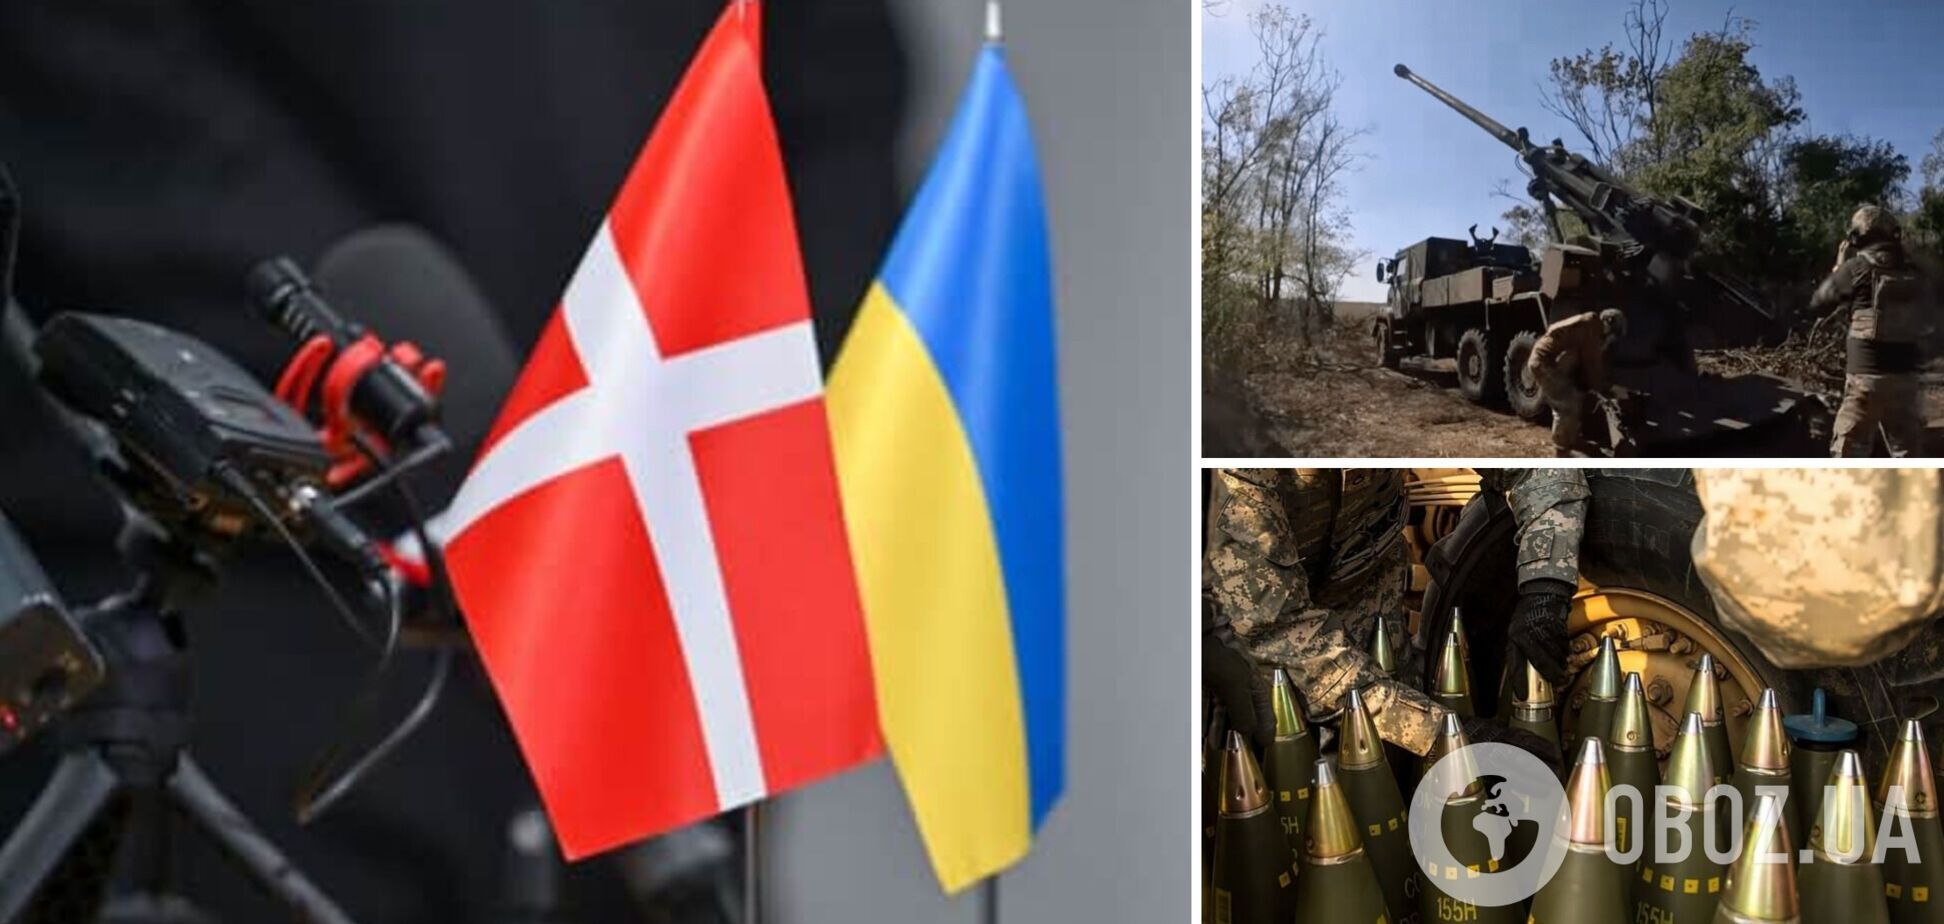 Дания объявила новый пакет военной помощи Украине на $337 миллионов: что в него вошло